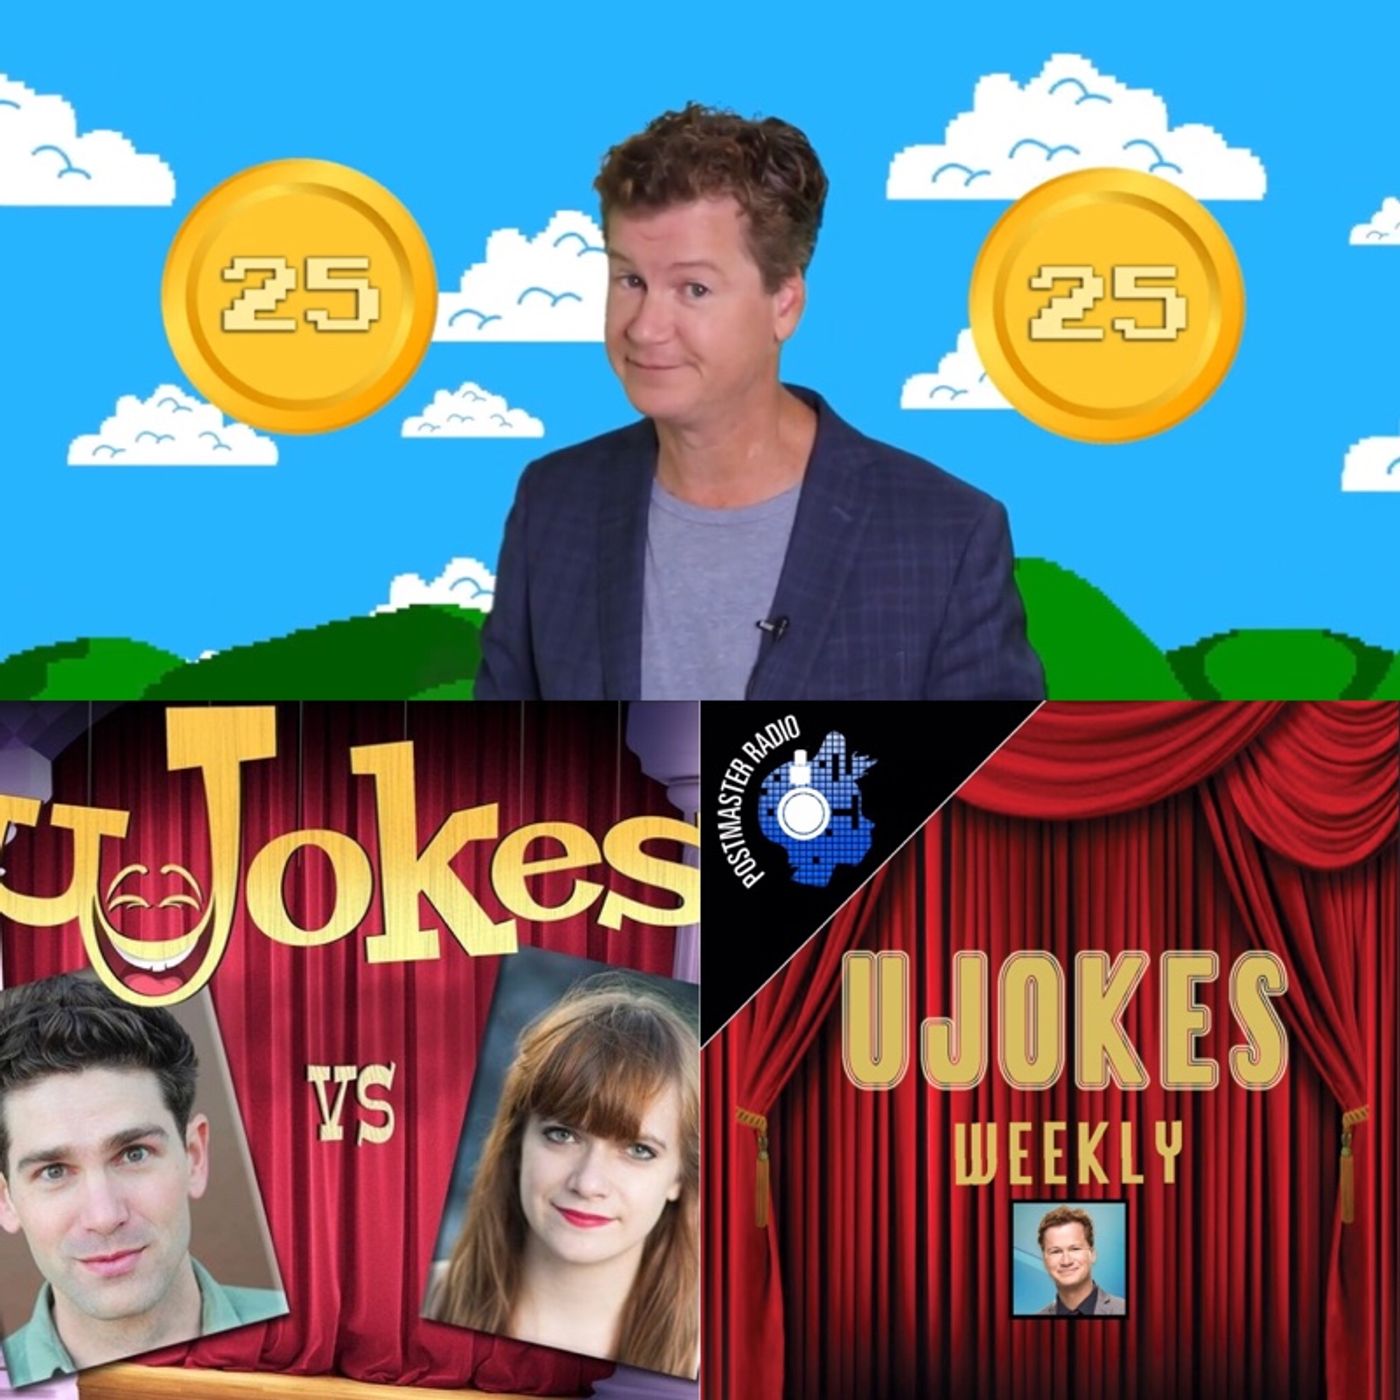 Top 5 Jokes from Ujokes Episode 78